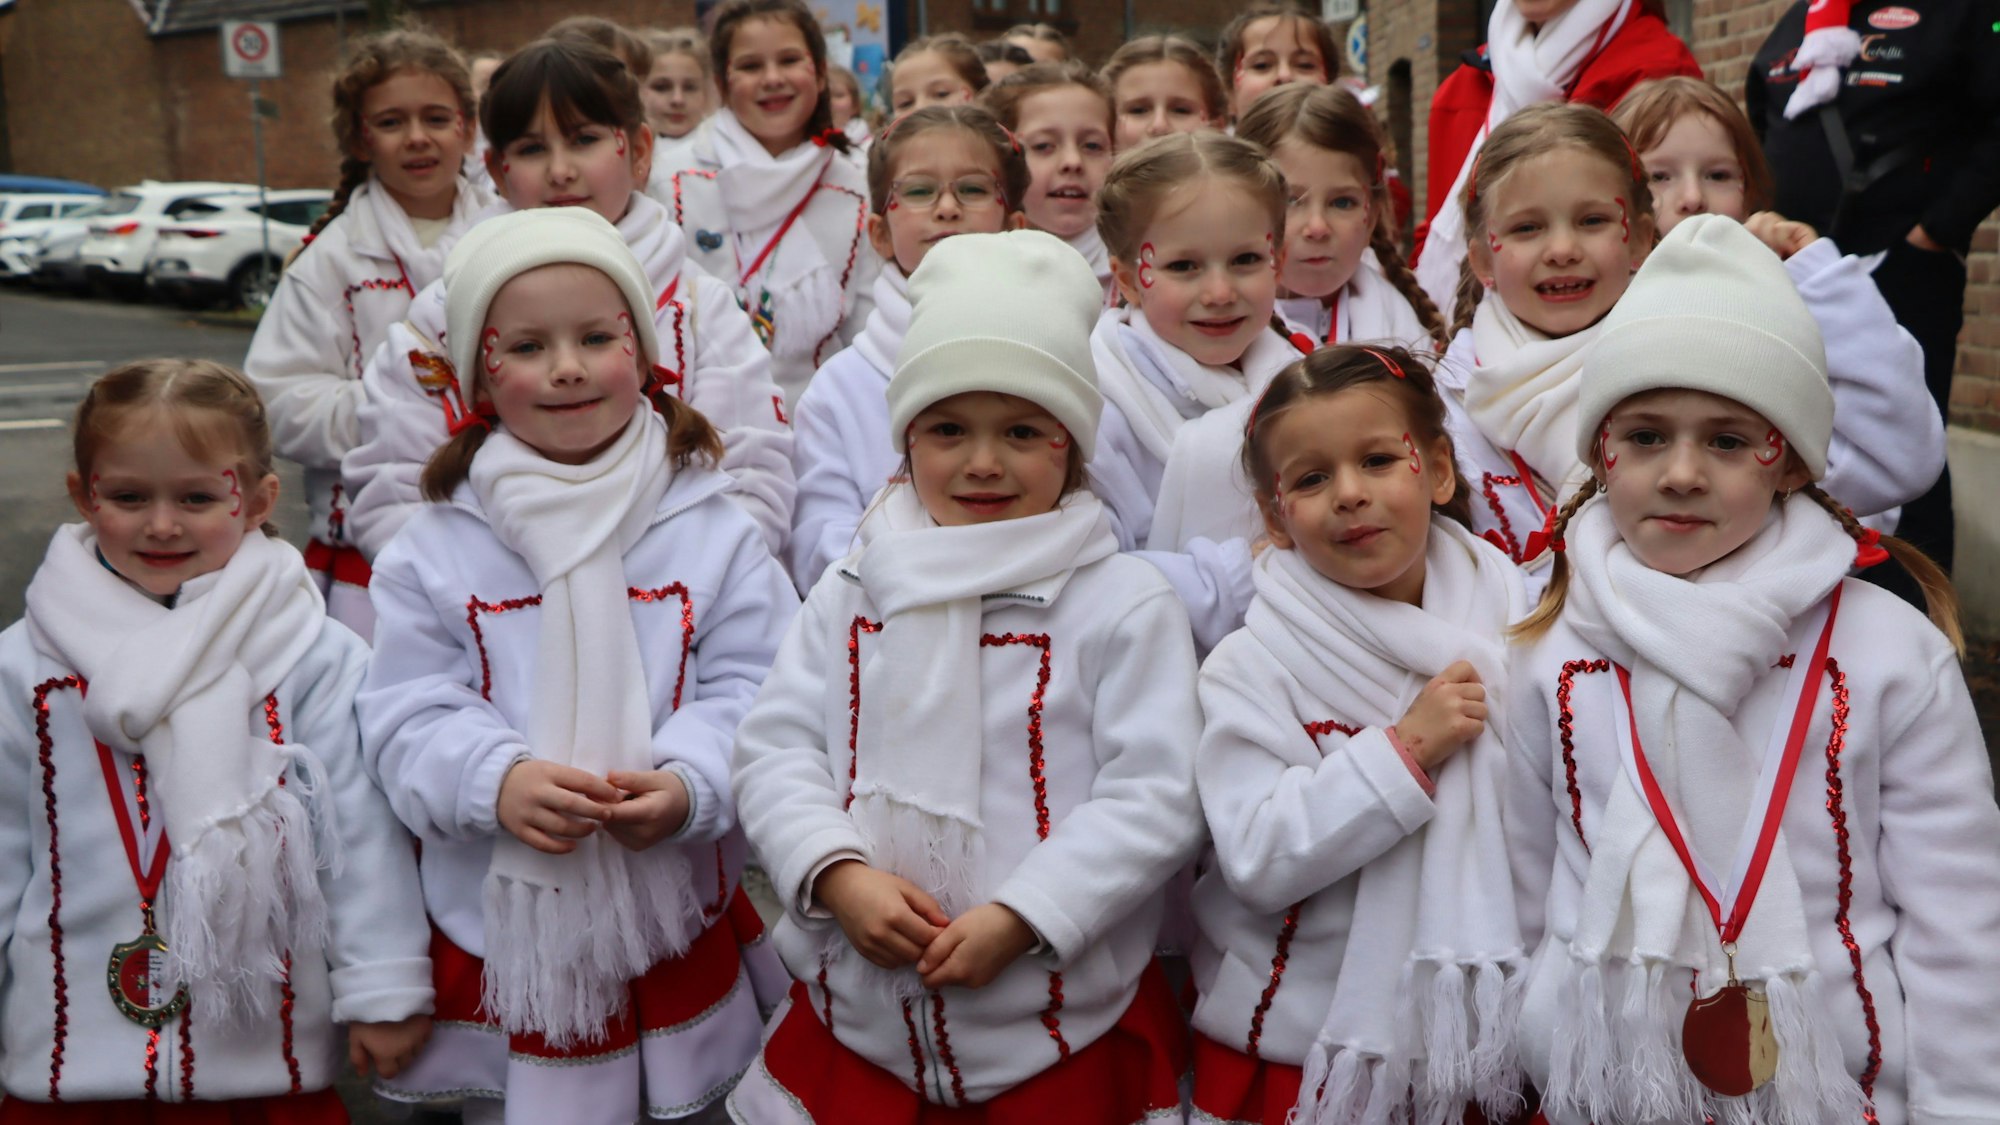 Der jecke Nachwuchs des Rösberger-Hemmericher Karnevals, das sind die Kinder wie hier die „Leckeren Mäus'chen“, die der Prinzessin voraus im Zug mitgingen.